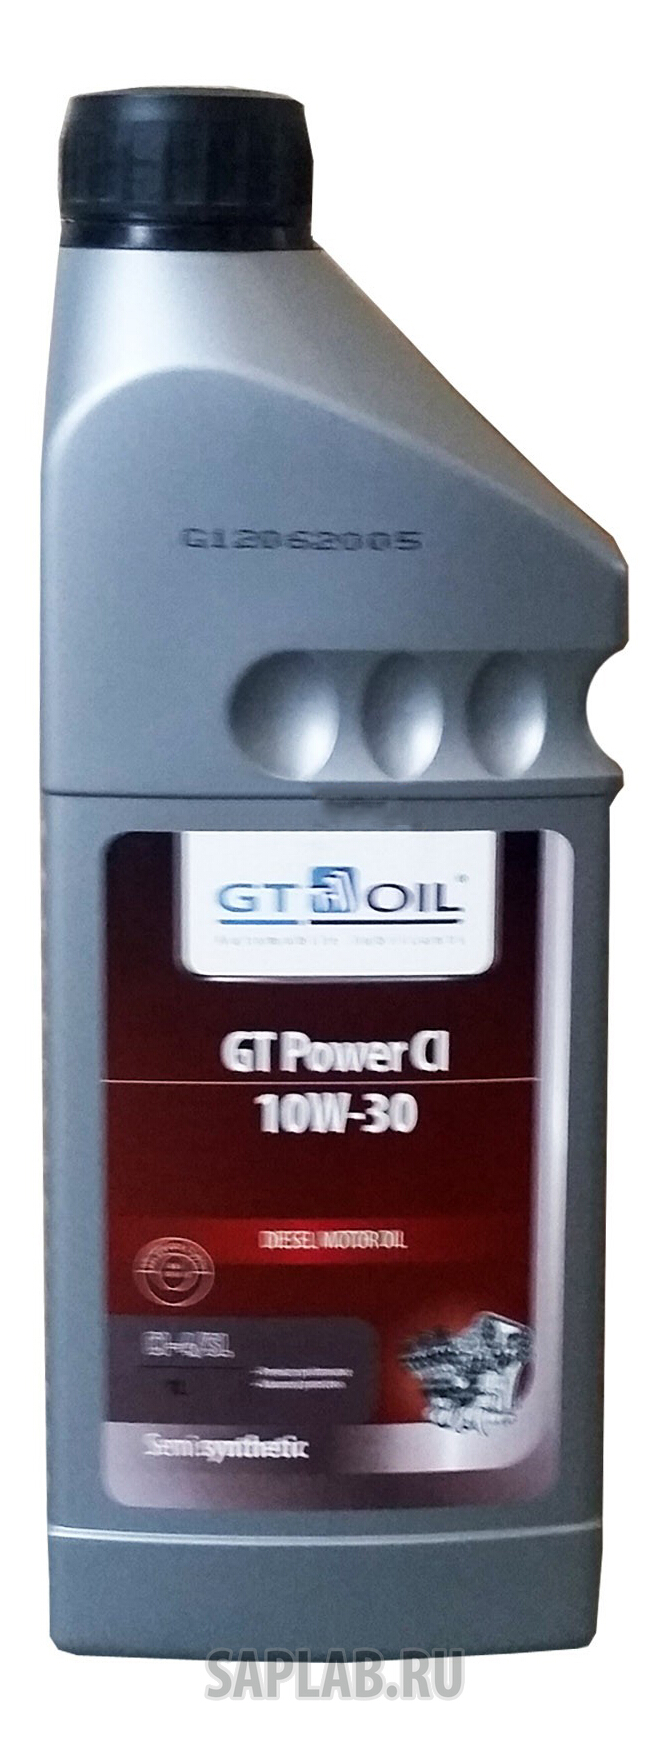 Купить запчасть GT OIL - 8809059407899 GT Power CI, 1л